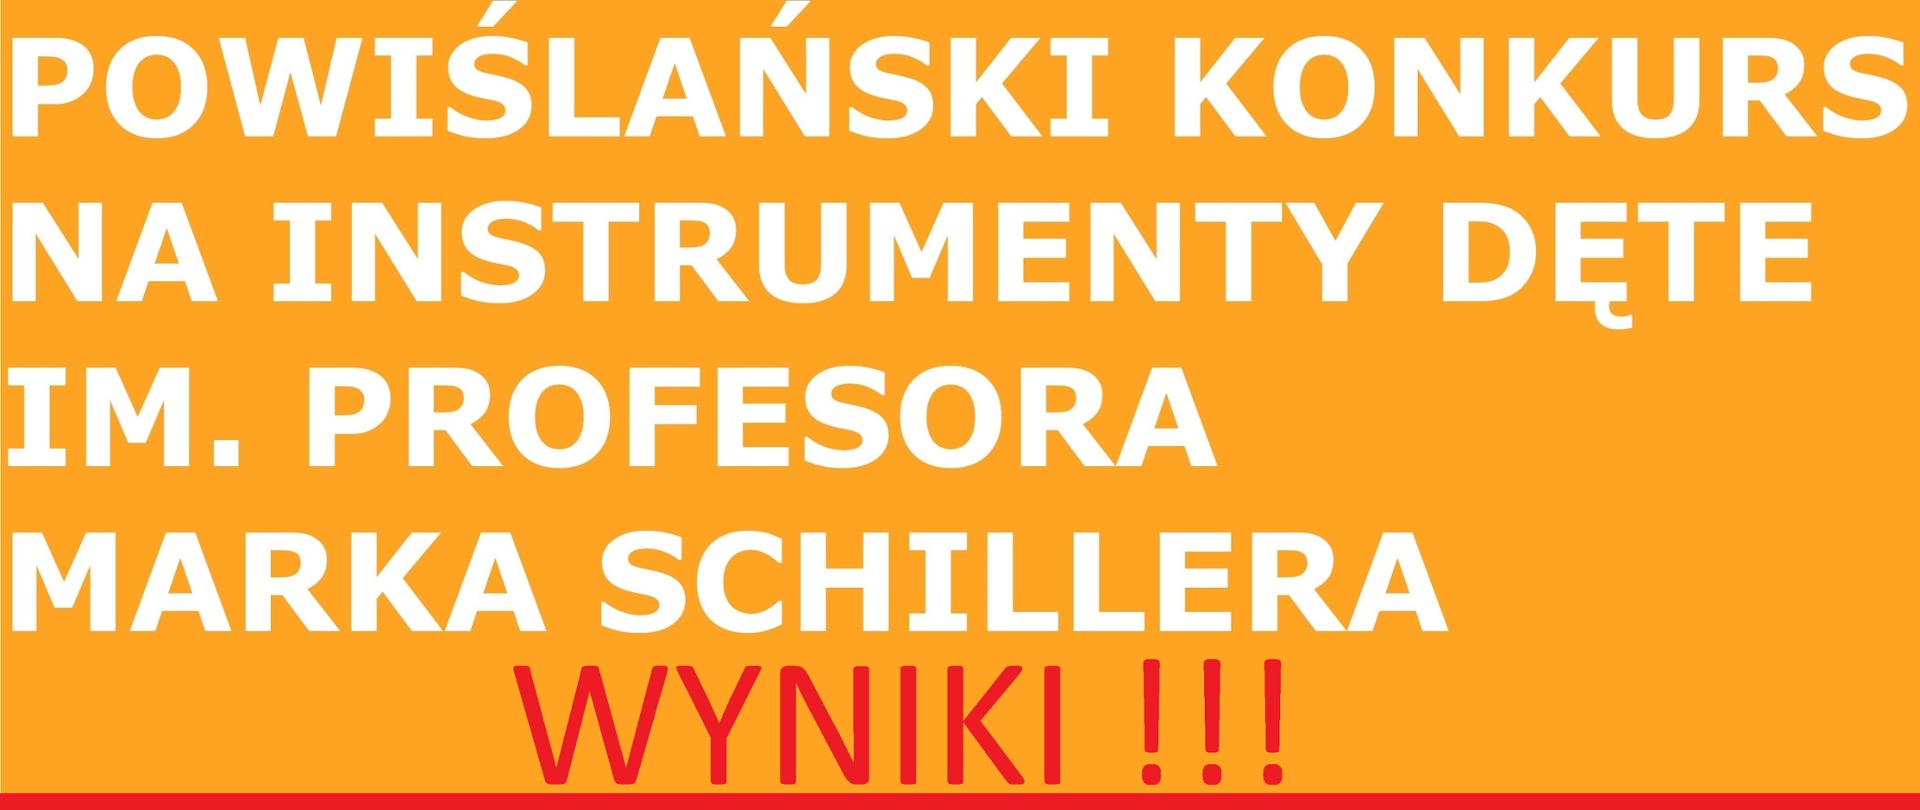 Plakat z informacją o wynikach XIII Powiślańskiego Konkursu na Instrumenty Dęte, białe napisy na pomarańczowym tle, duży czerwony napis wyniki